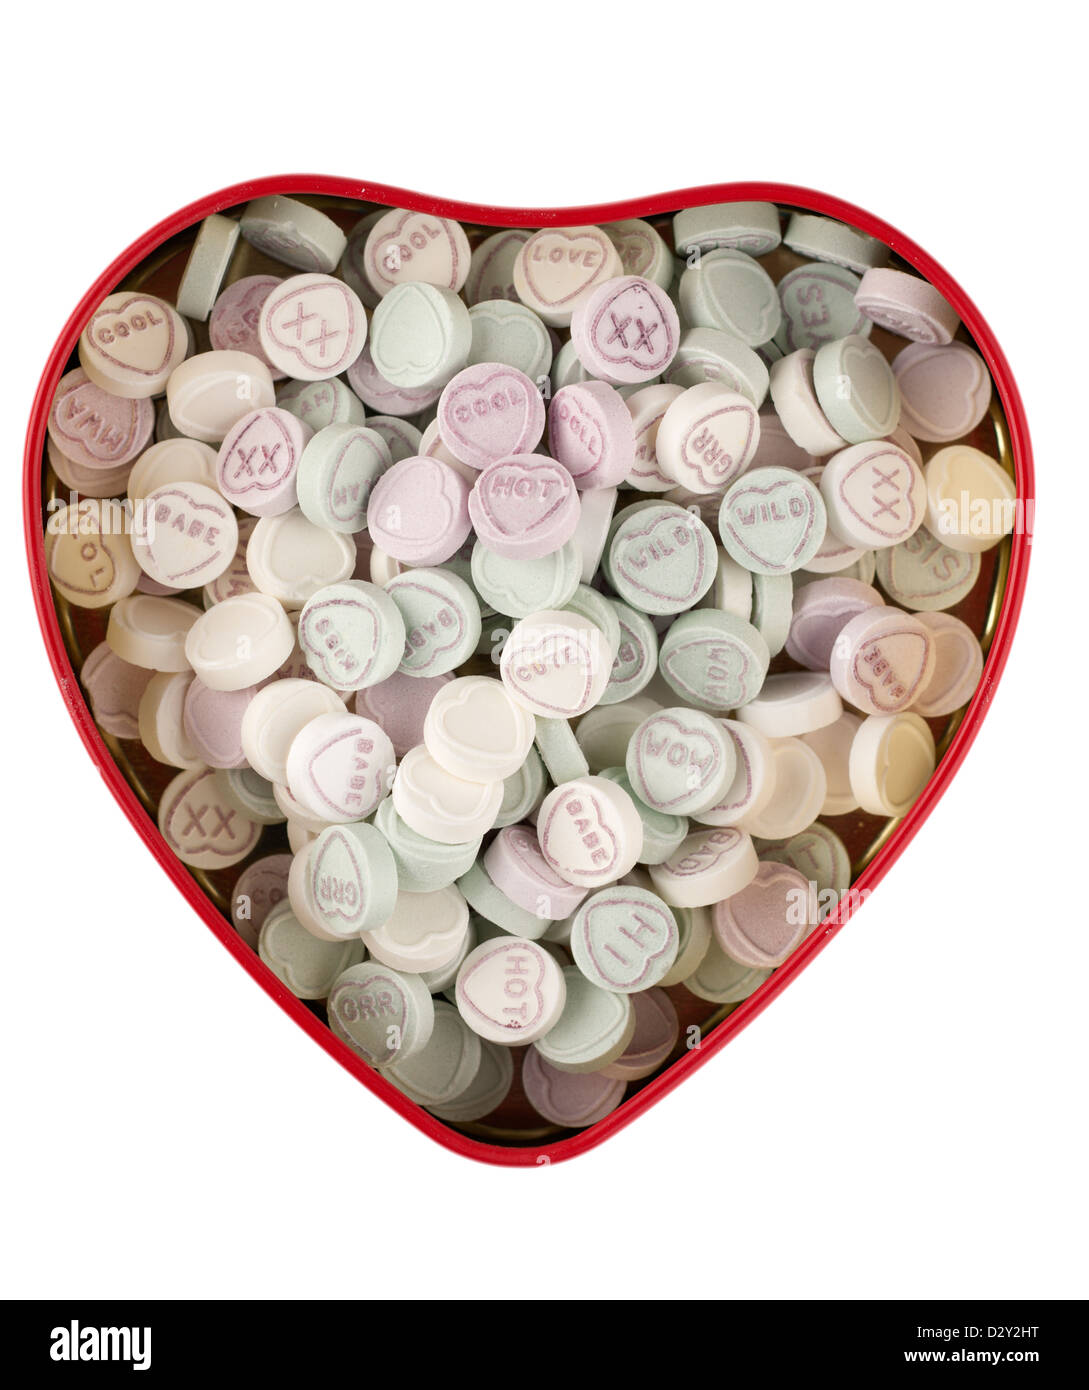 Tin of Mini Love Hearts Stock Photo